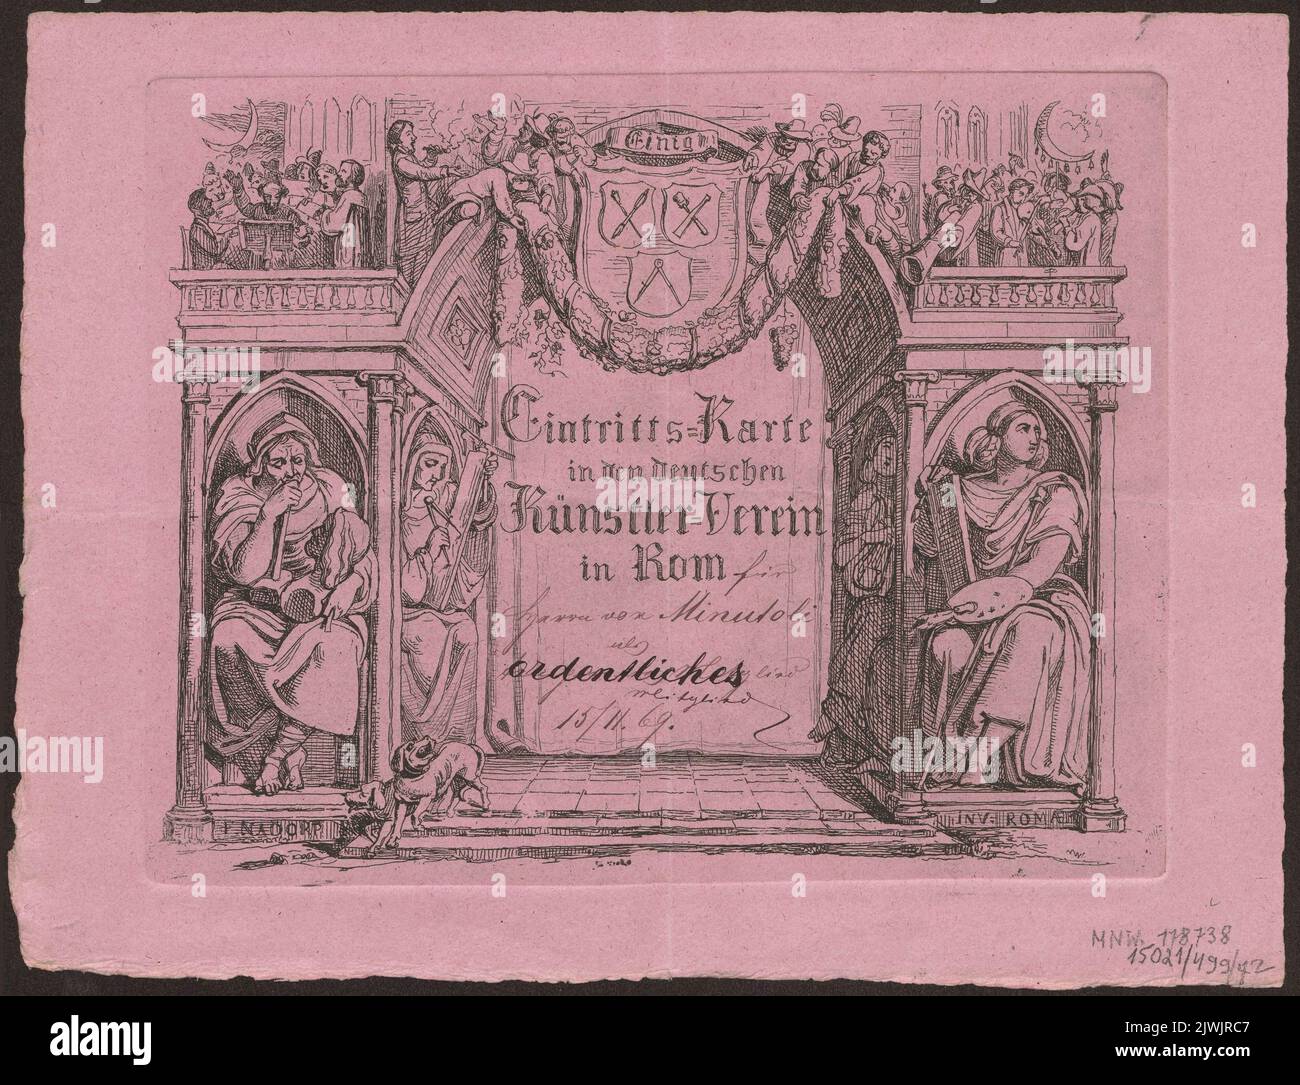 Eintritts Karte in den deutschen Künstler-Verein in Rom. Nadorp, Franz (1794-1876), graphic artist Stock Photo